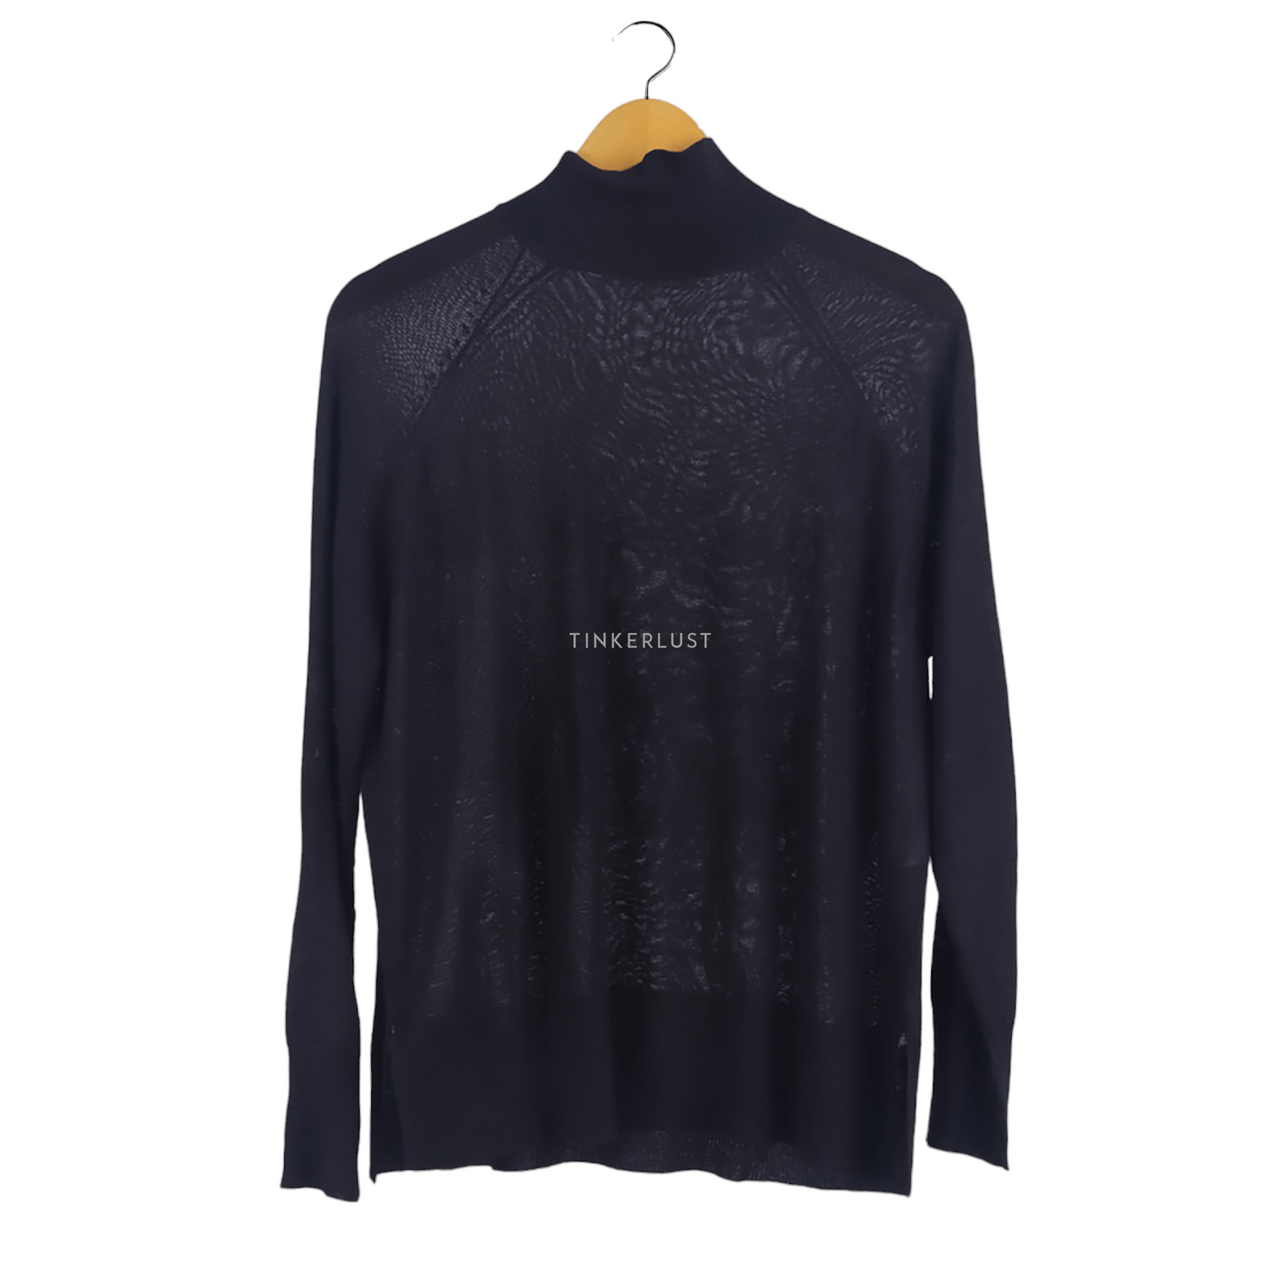 Zara Black Sweater